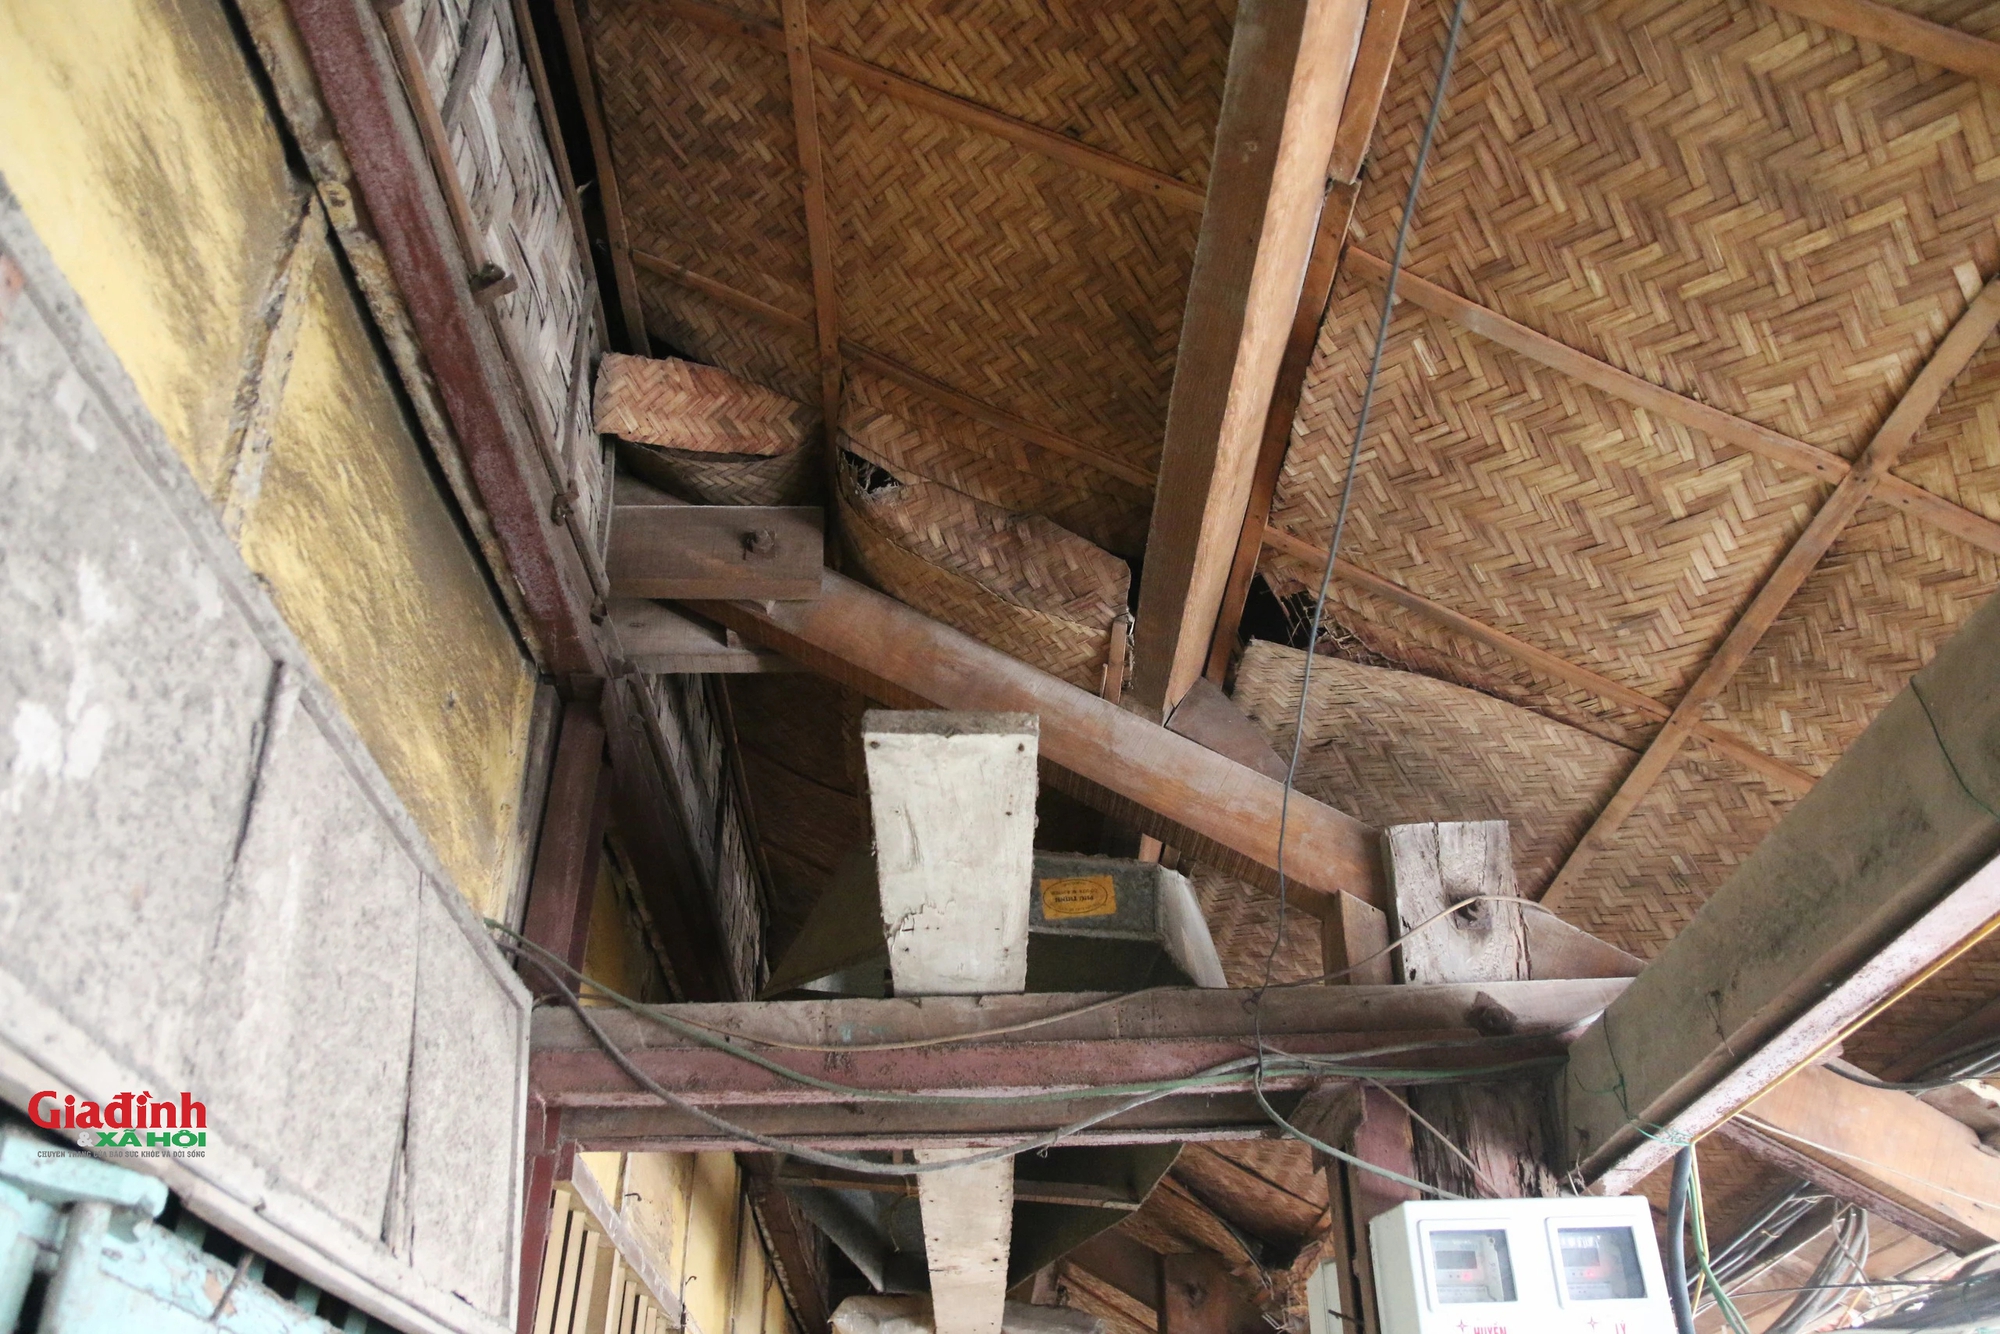 Cuộc sống của người dân bên trong khu tập thể bằng gỗ 70 tuổi 'chờ sập' ở Hà Nội - Ảnh 10.